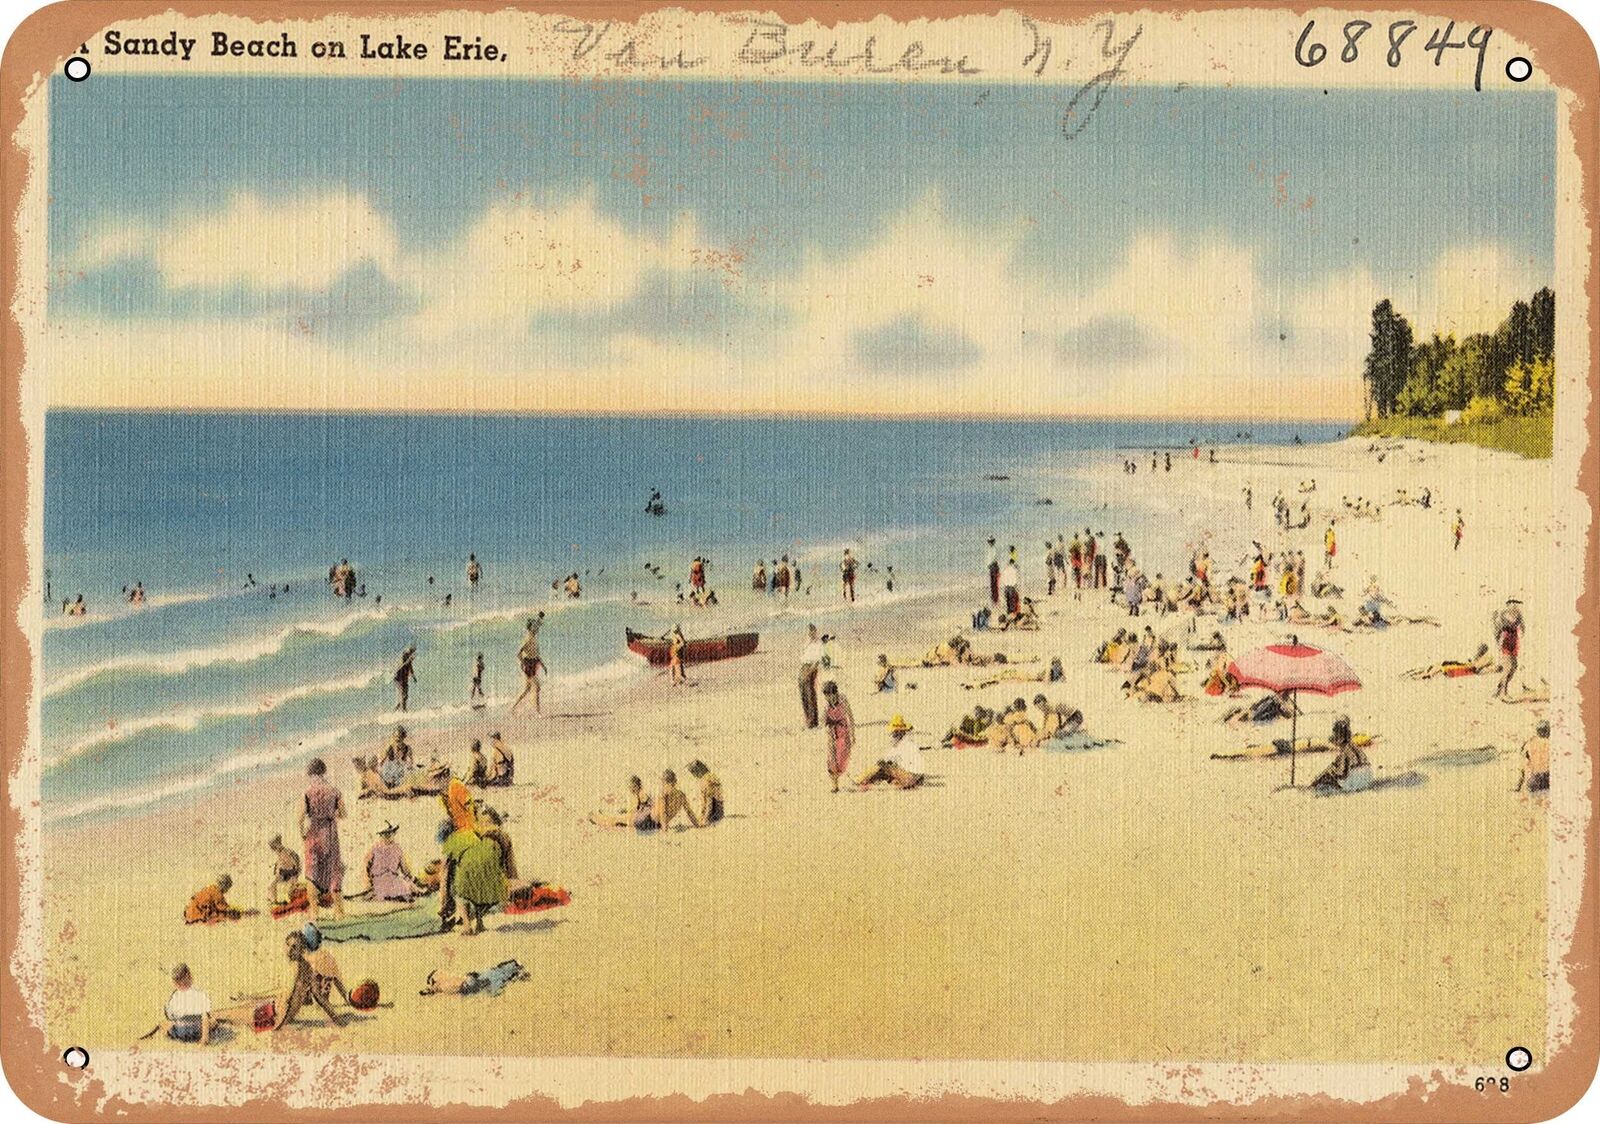 Metal Sign - New York Postcard - A sandy beach on Lake Erie, Van Buren, N. Y.